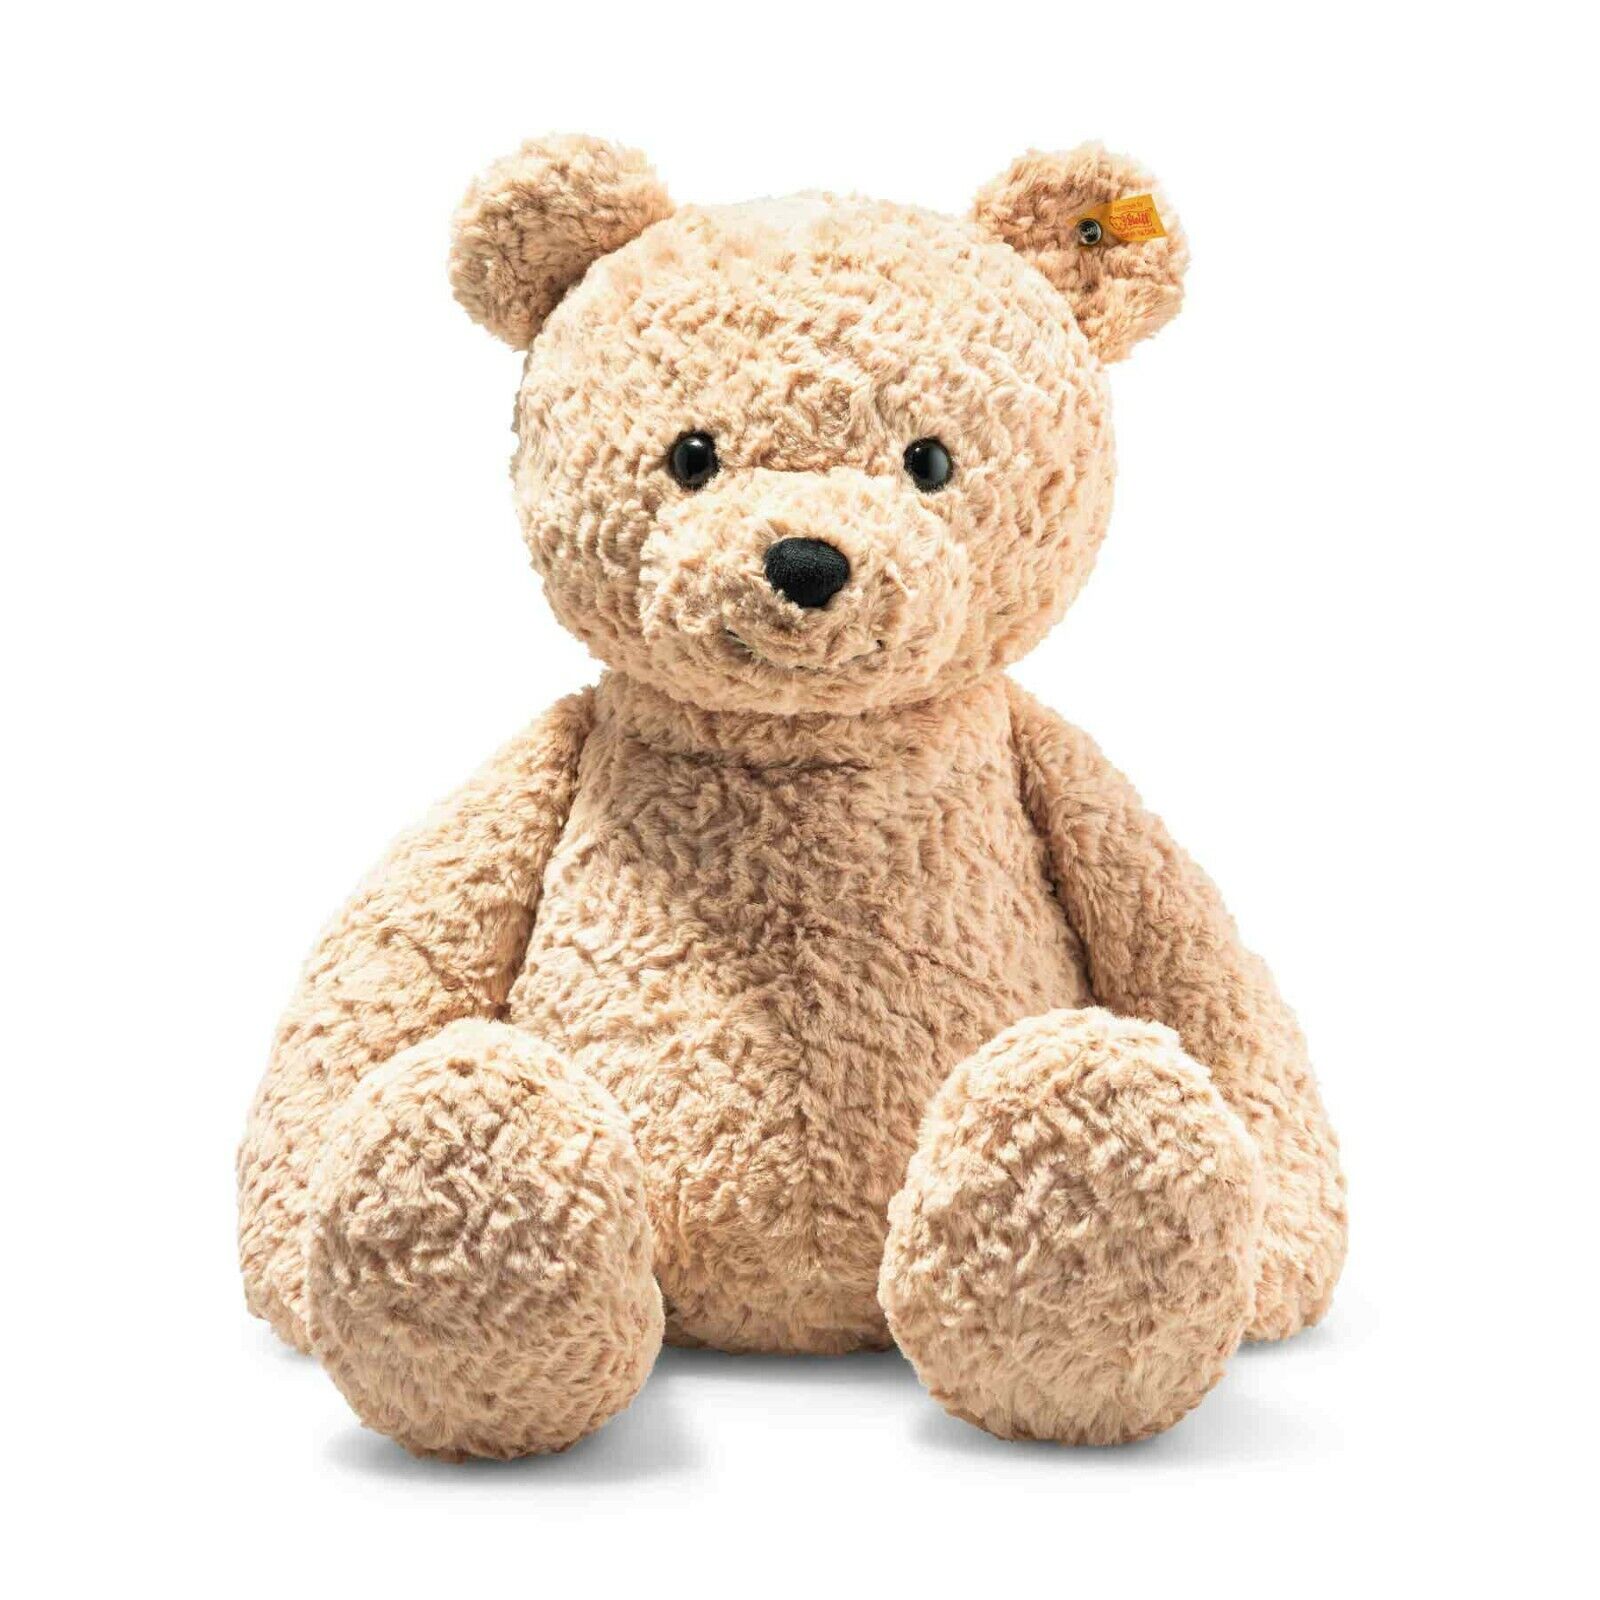 STEIFF Teddybär Jimmy 55 cm hellbraun 067181 - Neu - für Kinder und Sammler